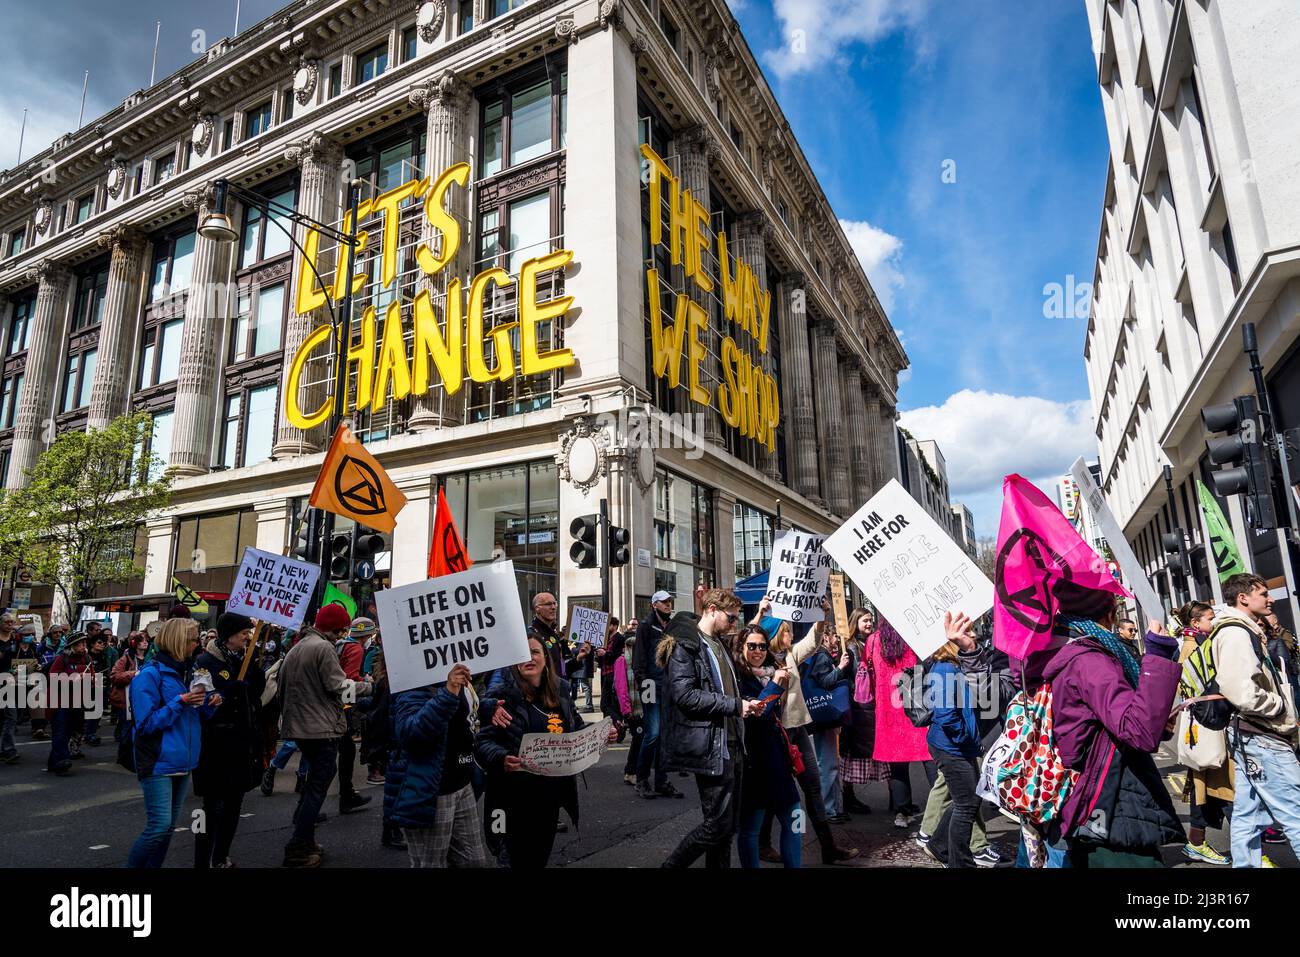 Non saremo spettatori, una protesta della ribellione di estinzione che combatte per la giustizia climatica, nel centro di Londra, 09.04.2022, Londra, Inghilterra, REGNO UNITO Foto Stock